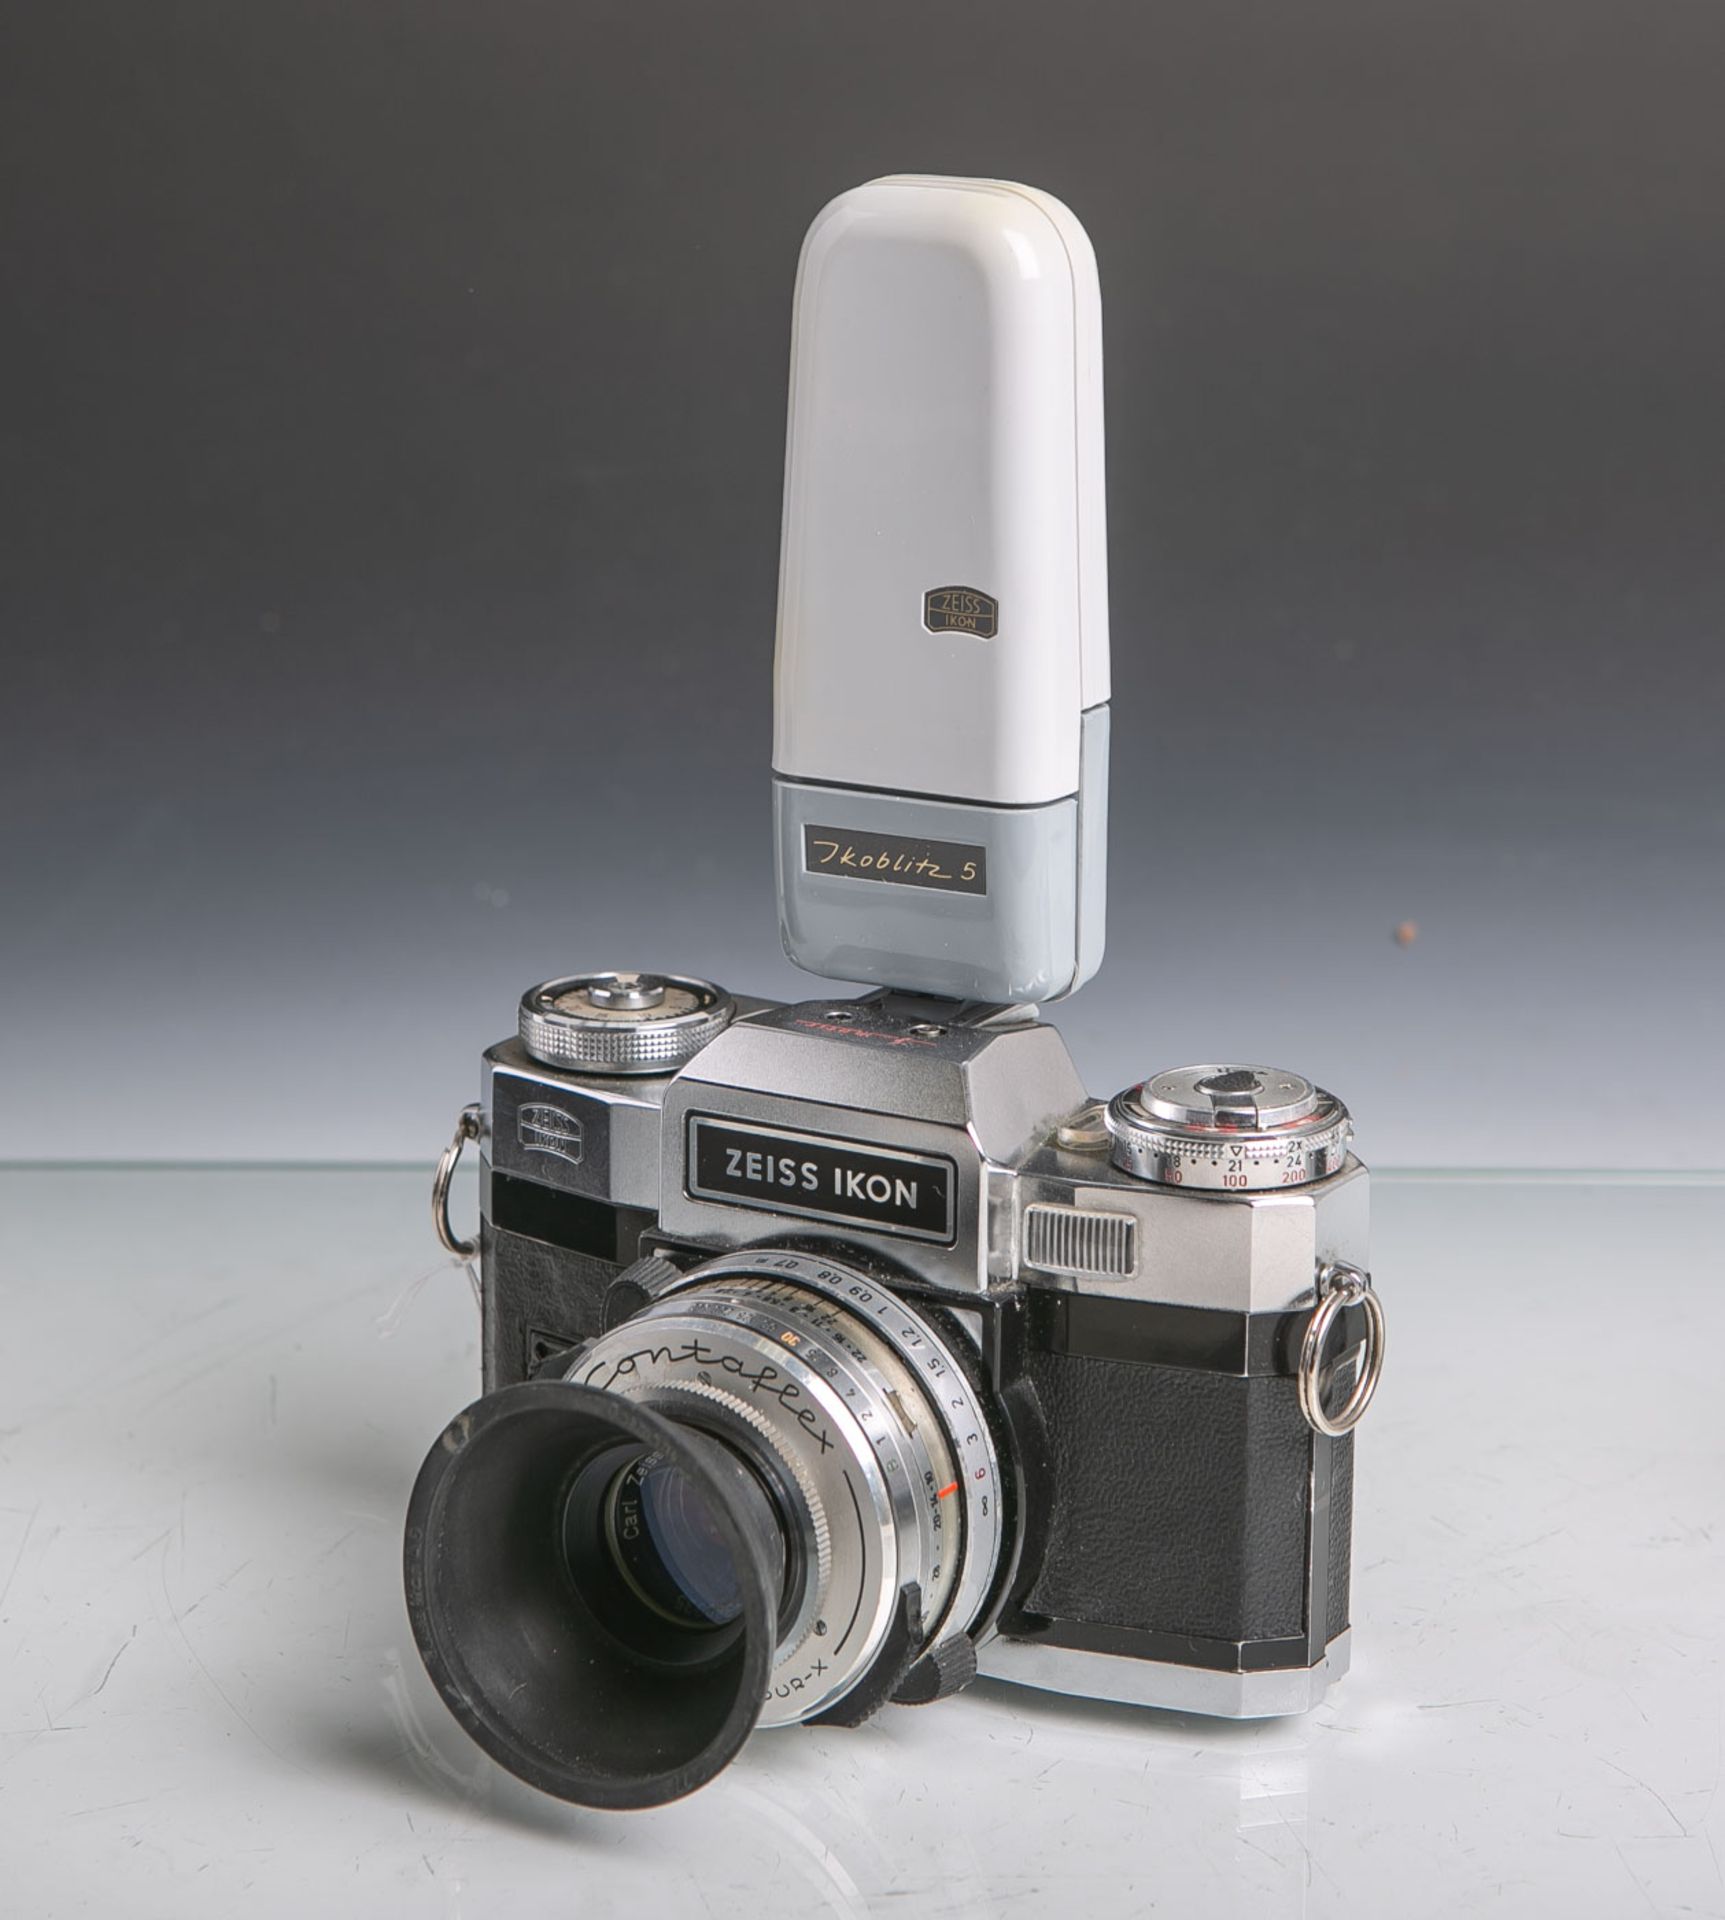 Zeiss Ikon-Fotokamera "Contaflex 5matic", Objektiv Tessar, 2,8/50, mit Blitzlicht(Ikoblitz 5 von